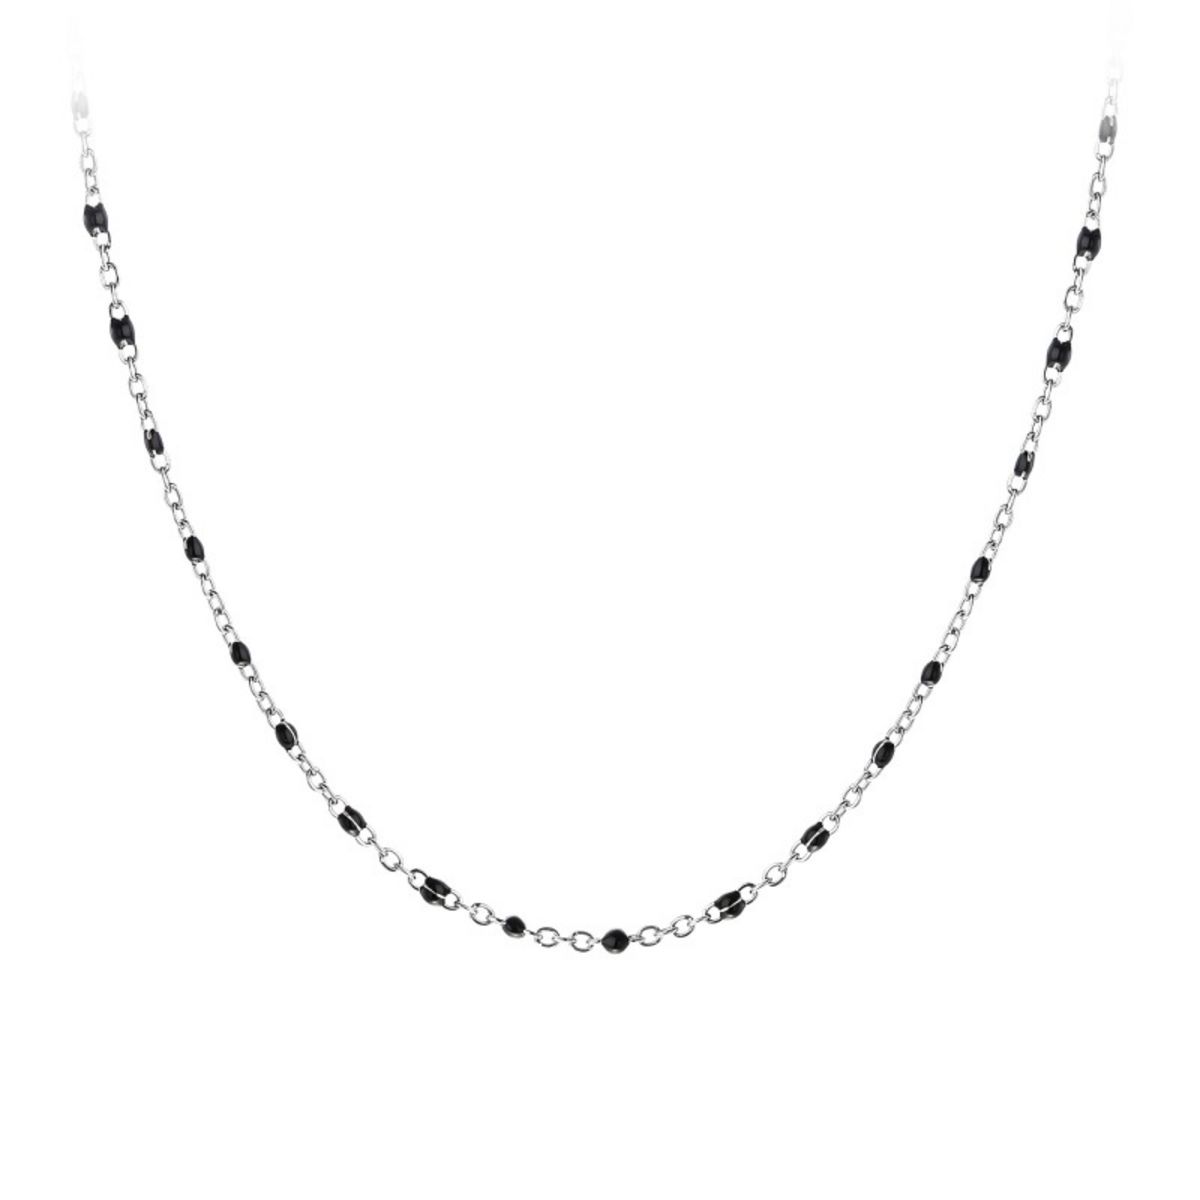  Collier perles noires par SC Bohème